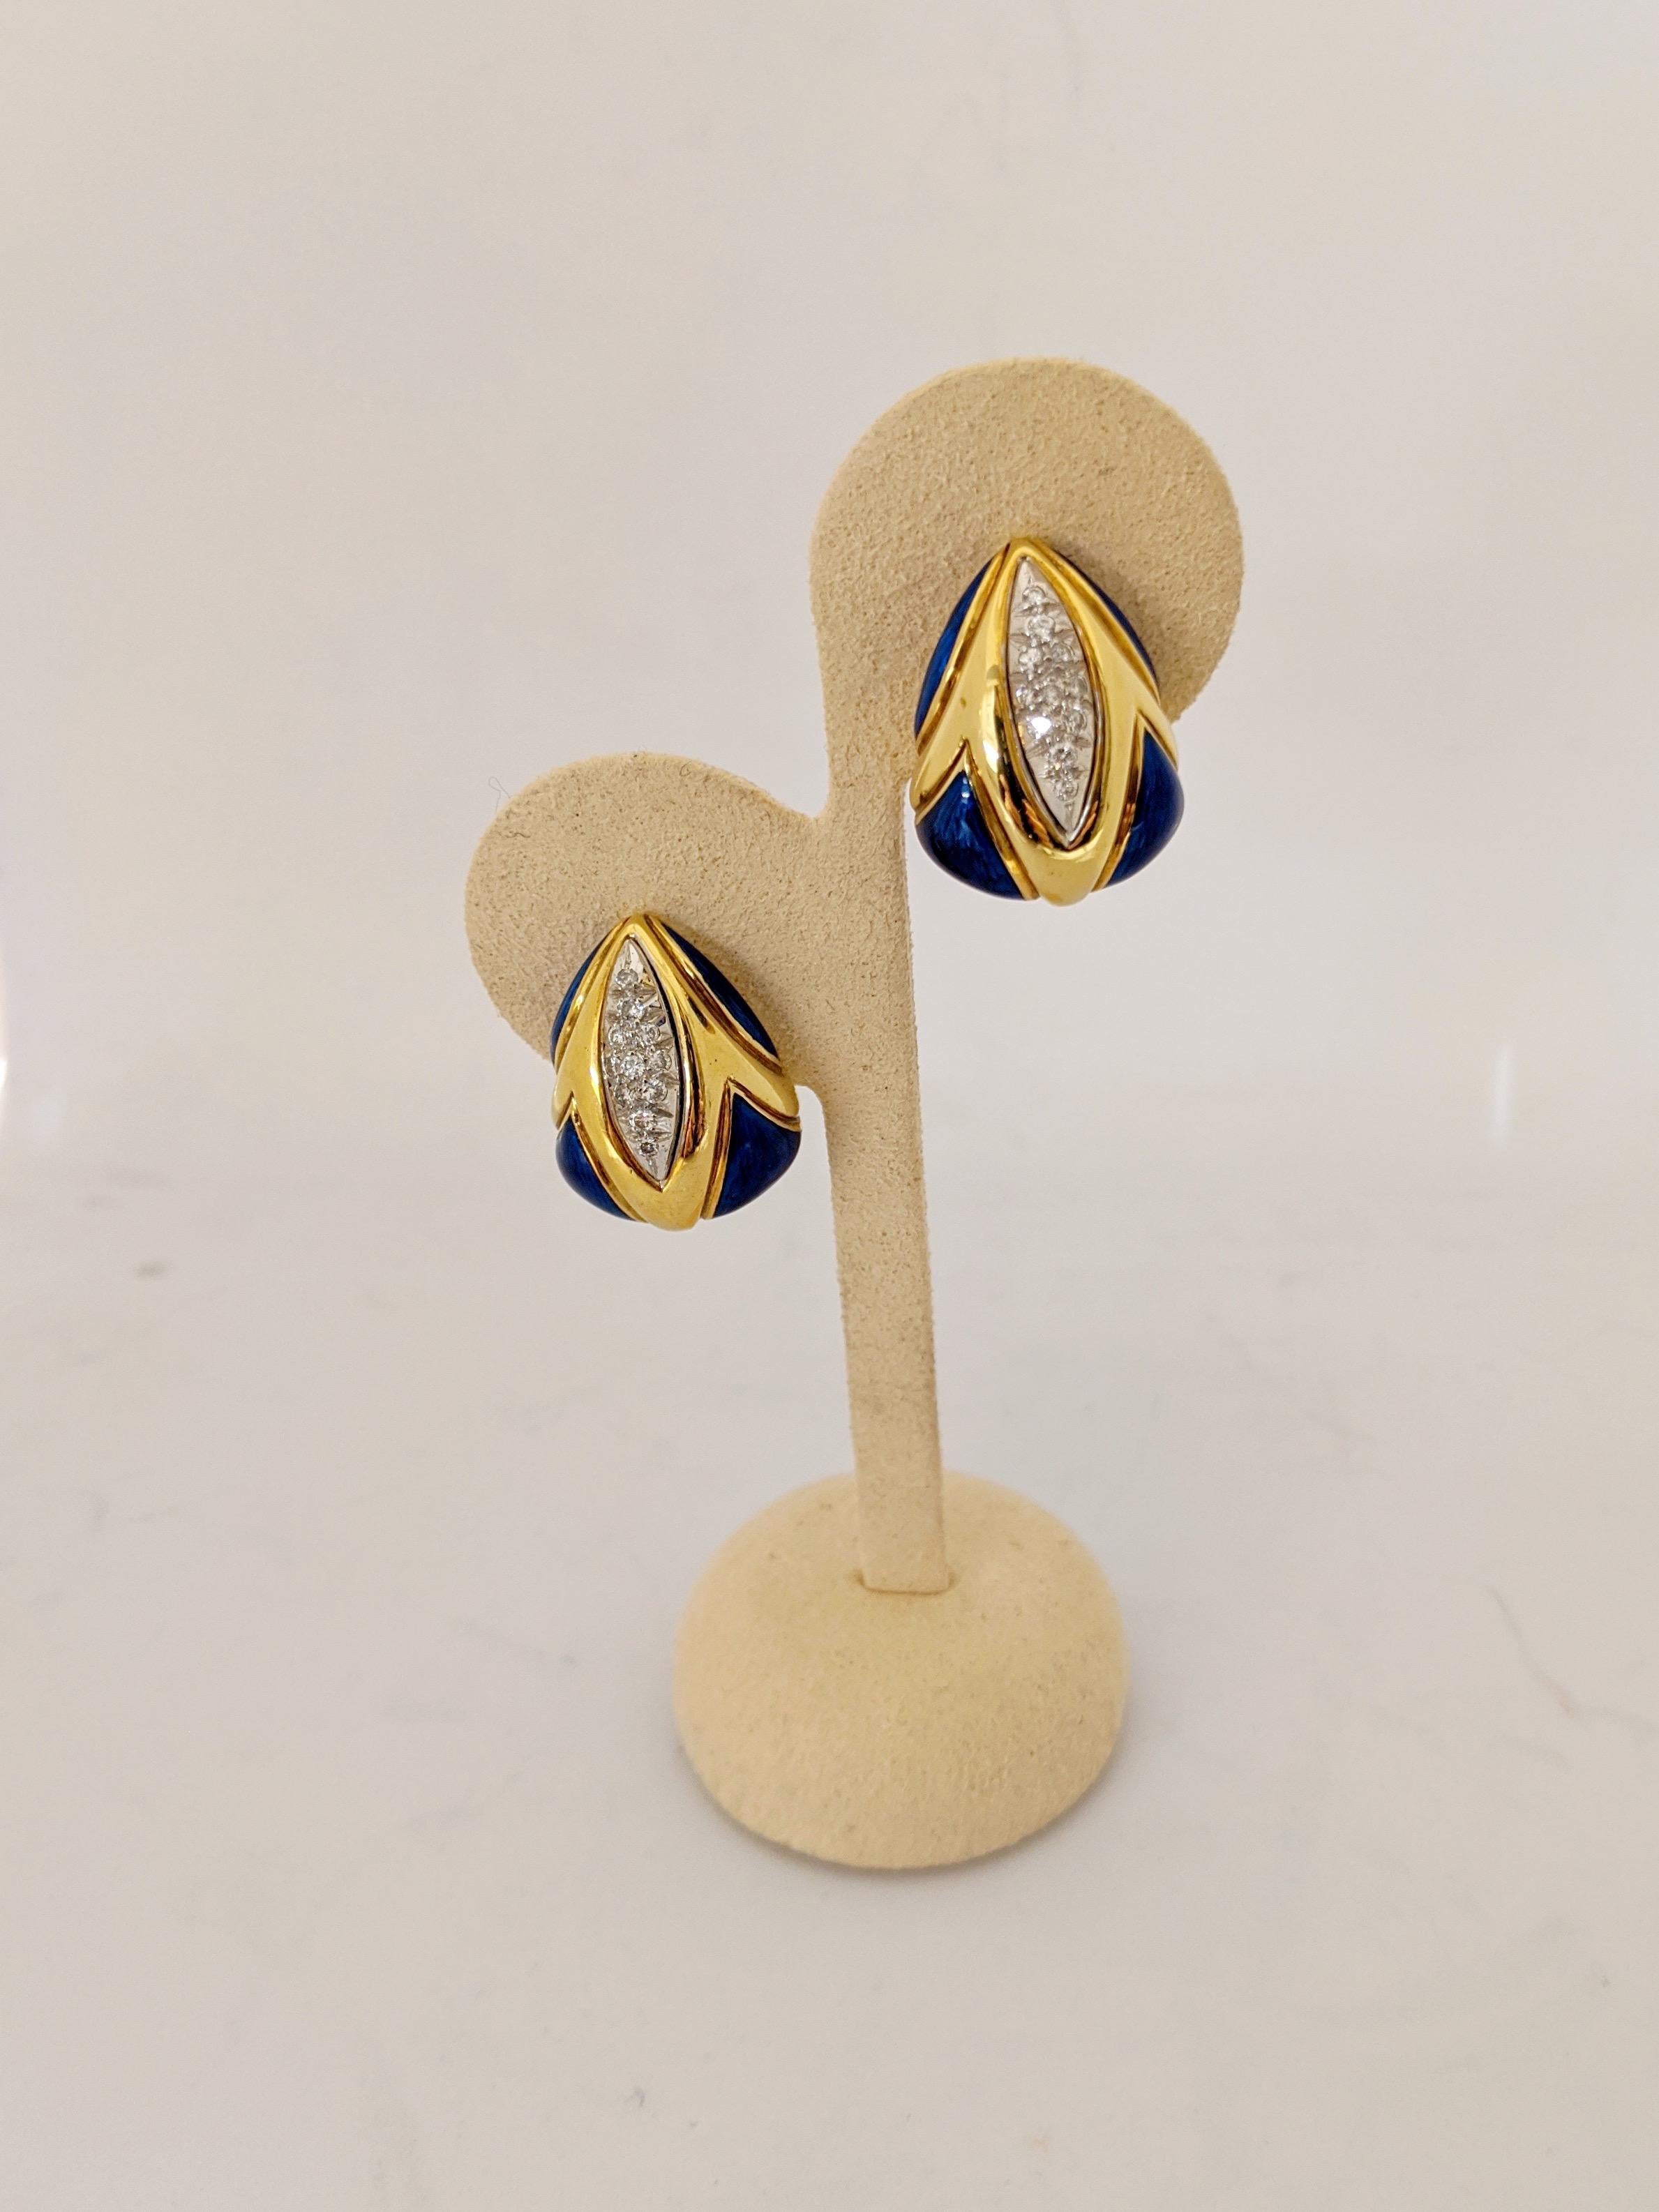 Diese Ohrringe aus 18 Karat Gelbgold haben eine dreieckige Form. Die Ohrringe sind mit eingefassten Diamanten und geschliffenen Lapisfasern in geometrischen Formen besetzt. Sie haben einen französischen Clip und sind für gepiercte und nicht